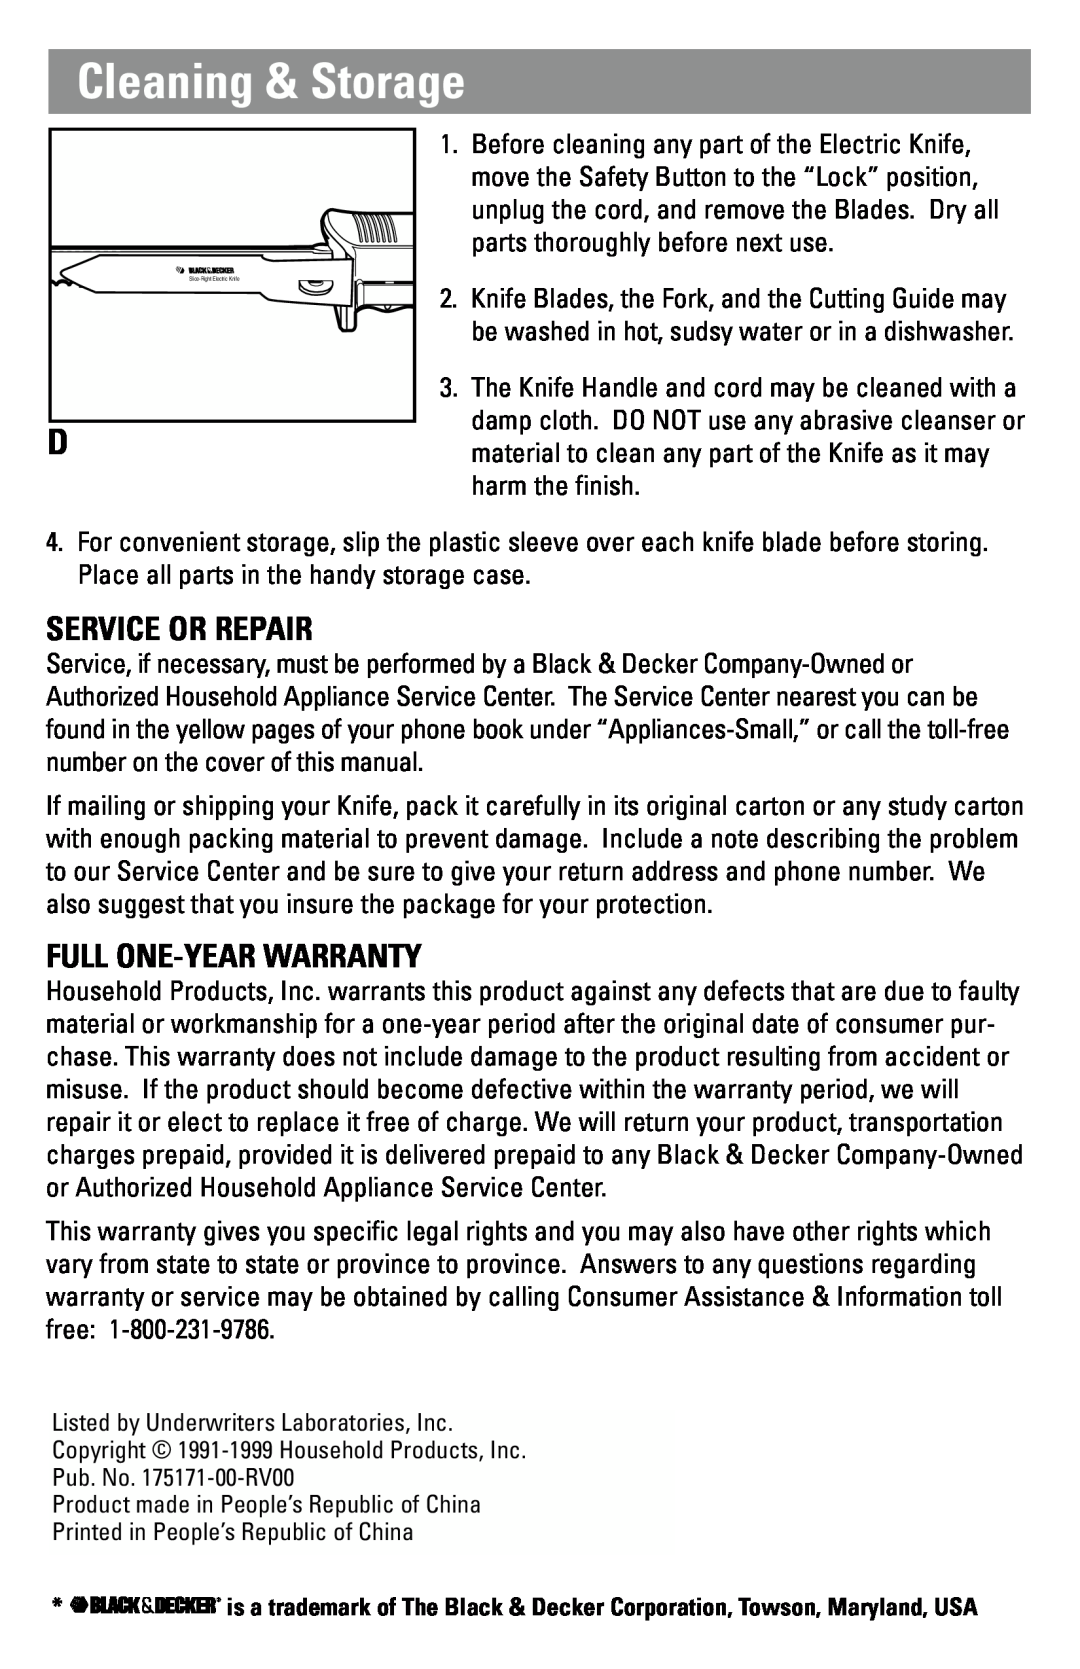 Black & Decker EK350 manual Cleaning & Storage, Service Or Repair, Full One-Year Warranty 